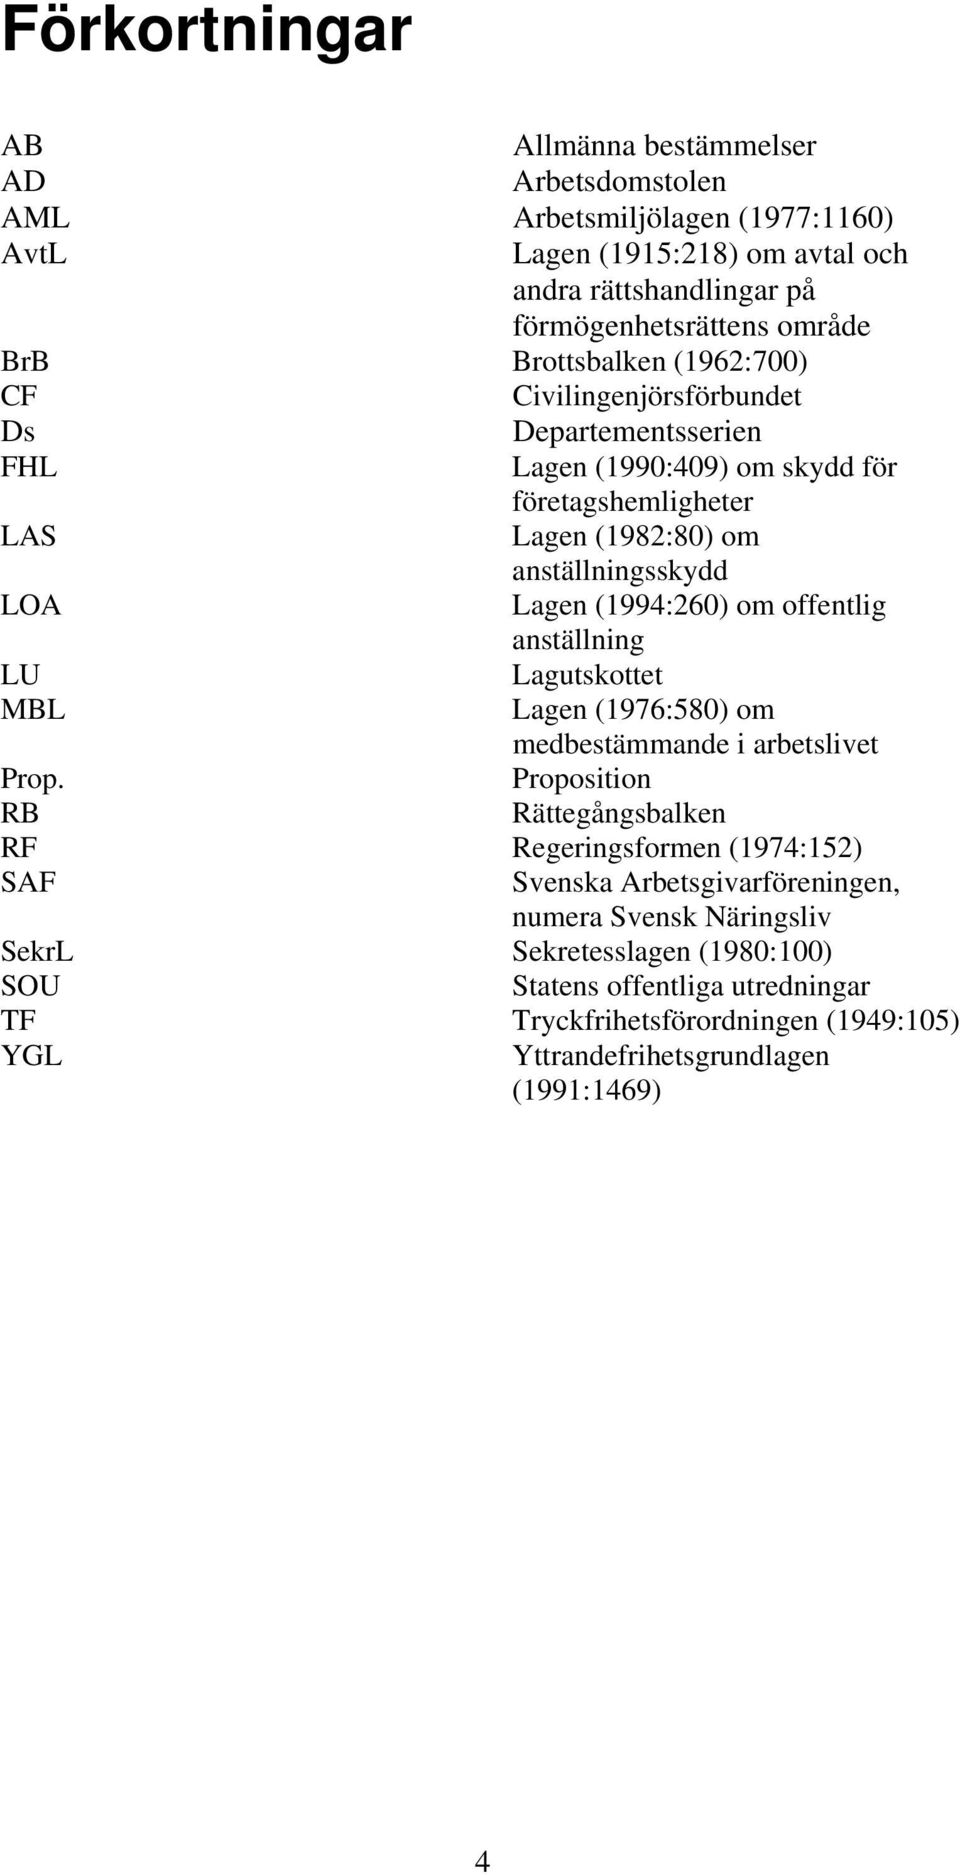 (1994:260) om offentlig anställning LU Lagutskottet MBL Lagen (1976:580) om medbestämmande i arbetslivet Prop.